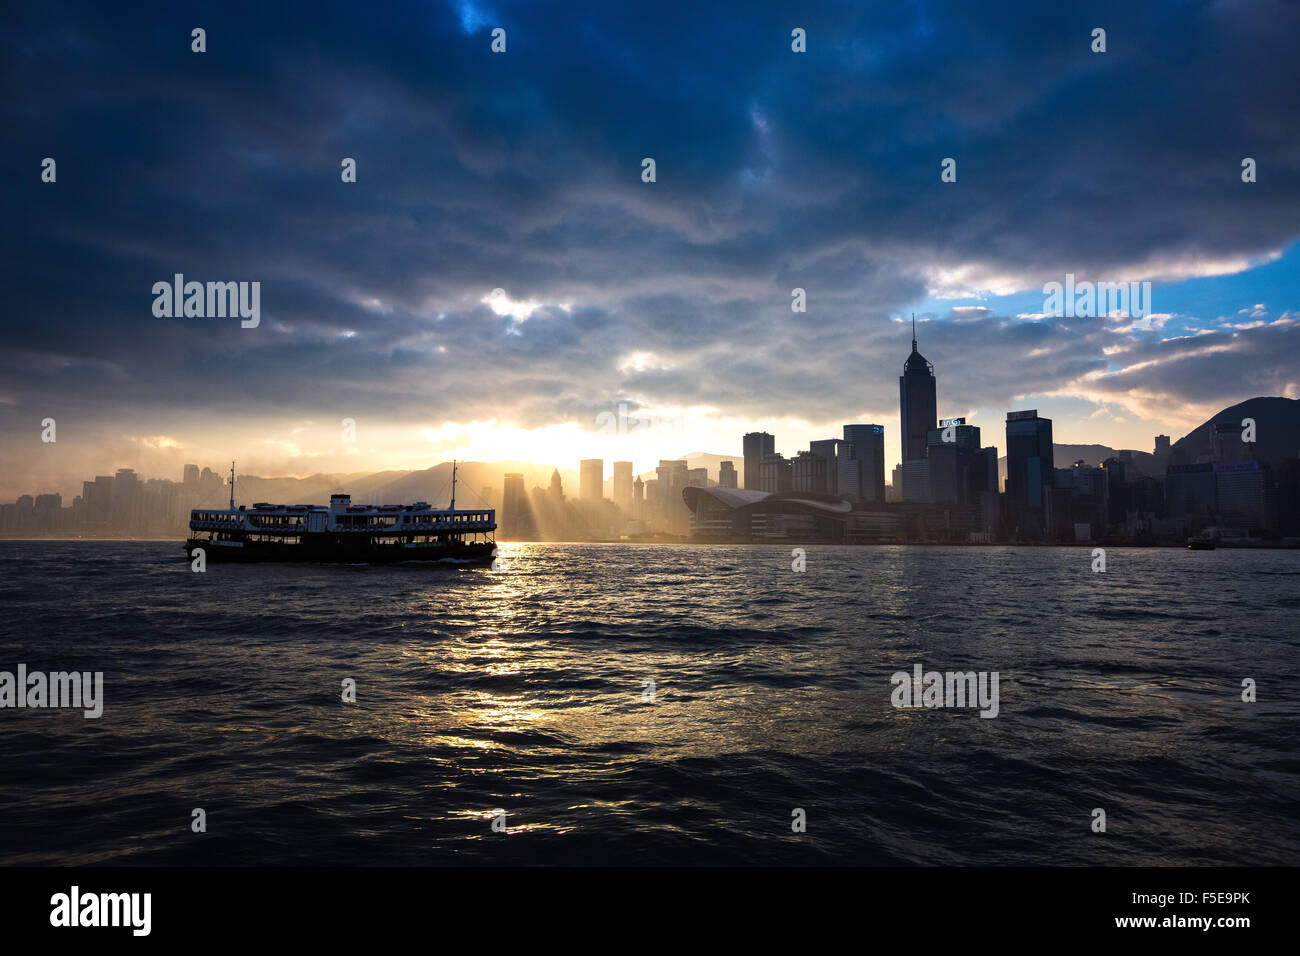 Skyline di Hong Kong con il traghetto Star, Hong Kong, Cina, Asia Foto Stock